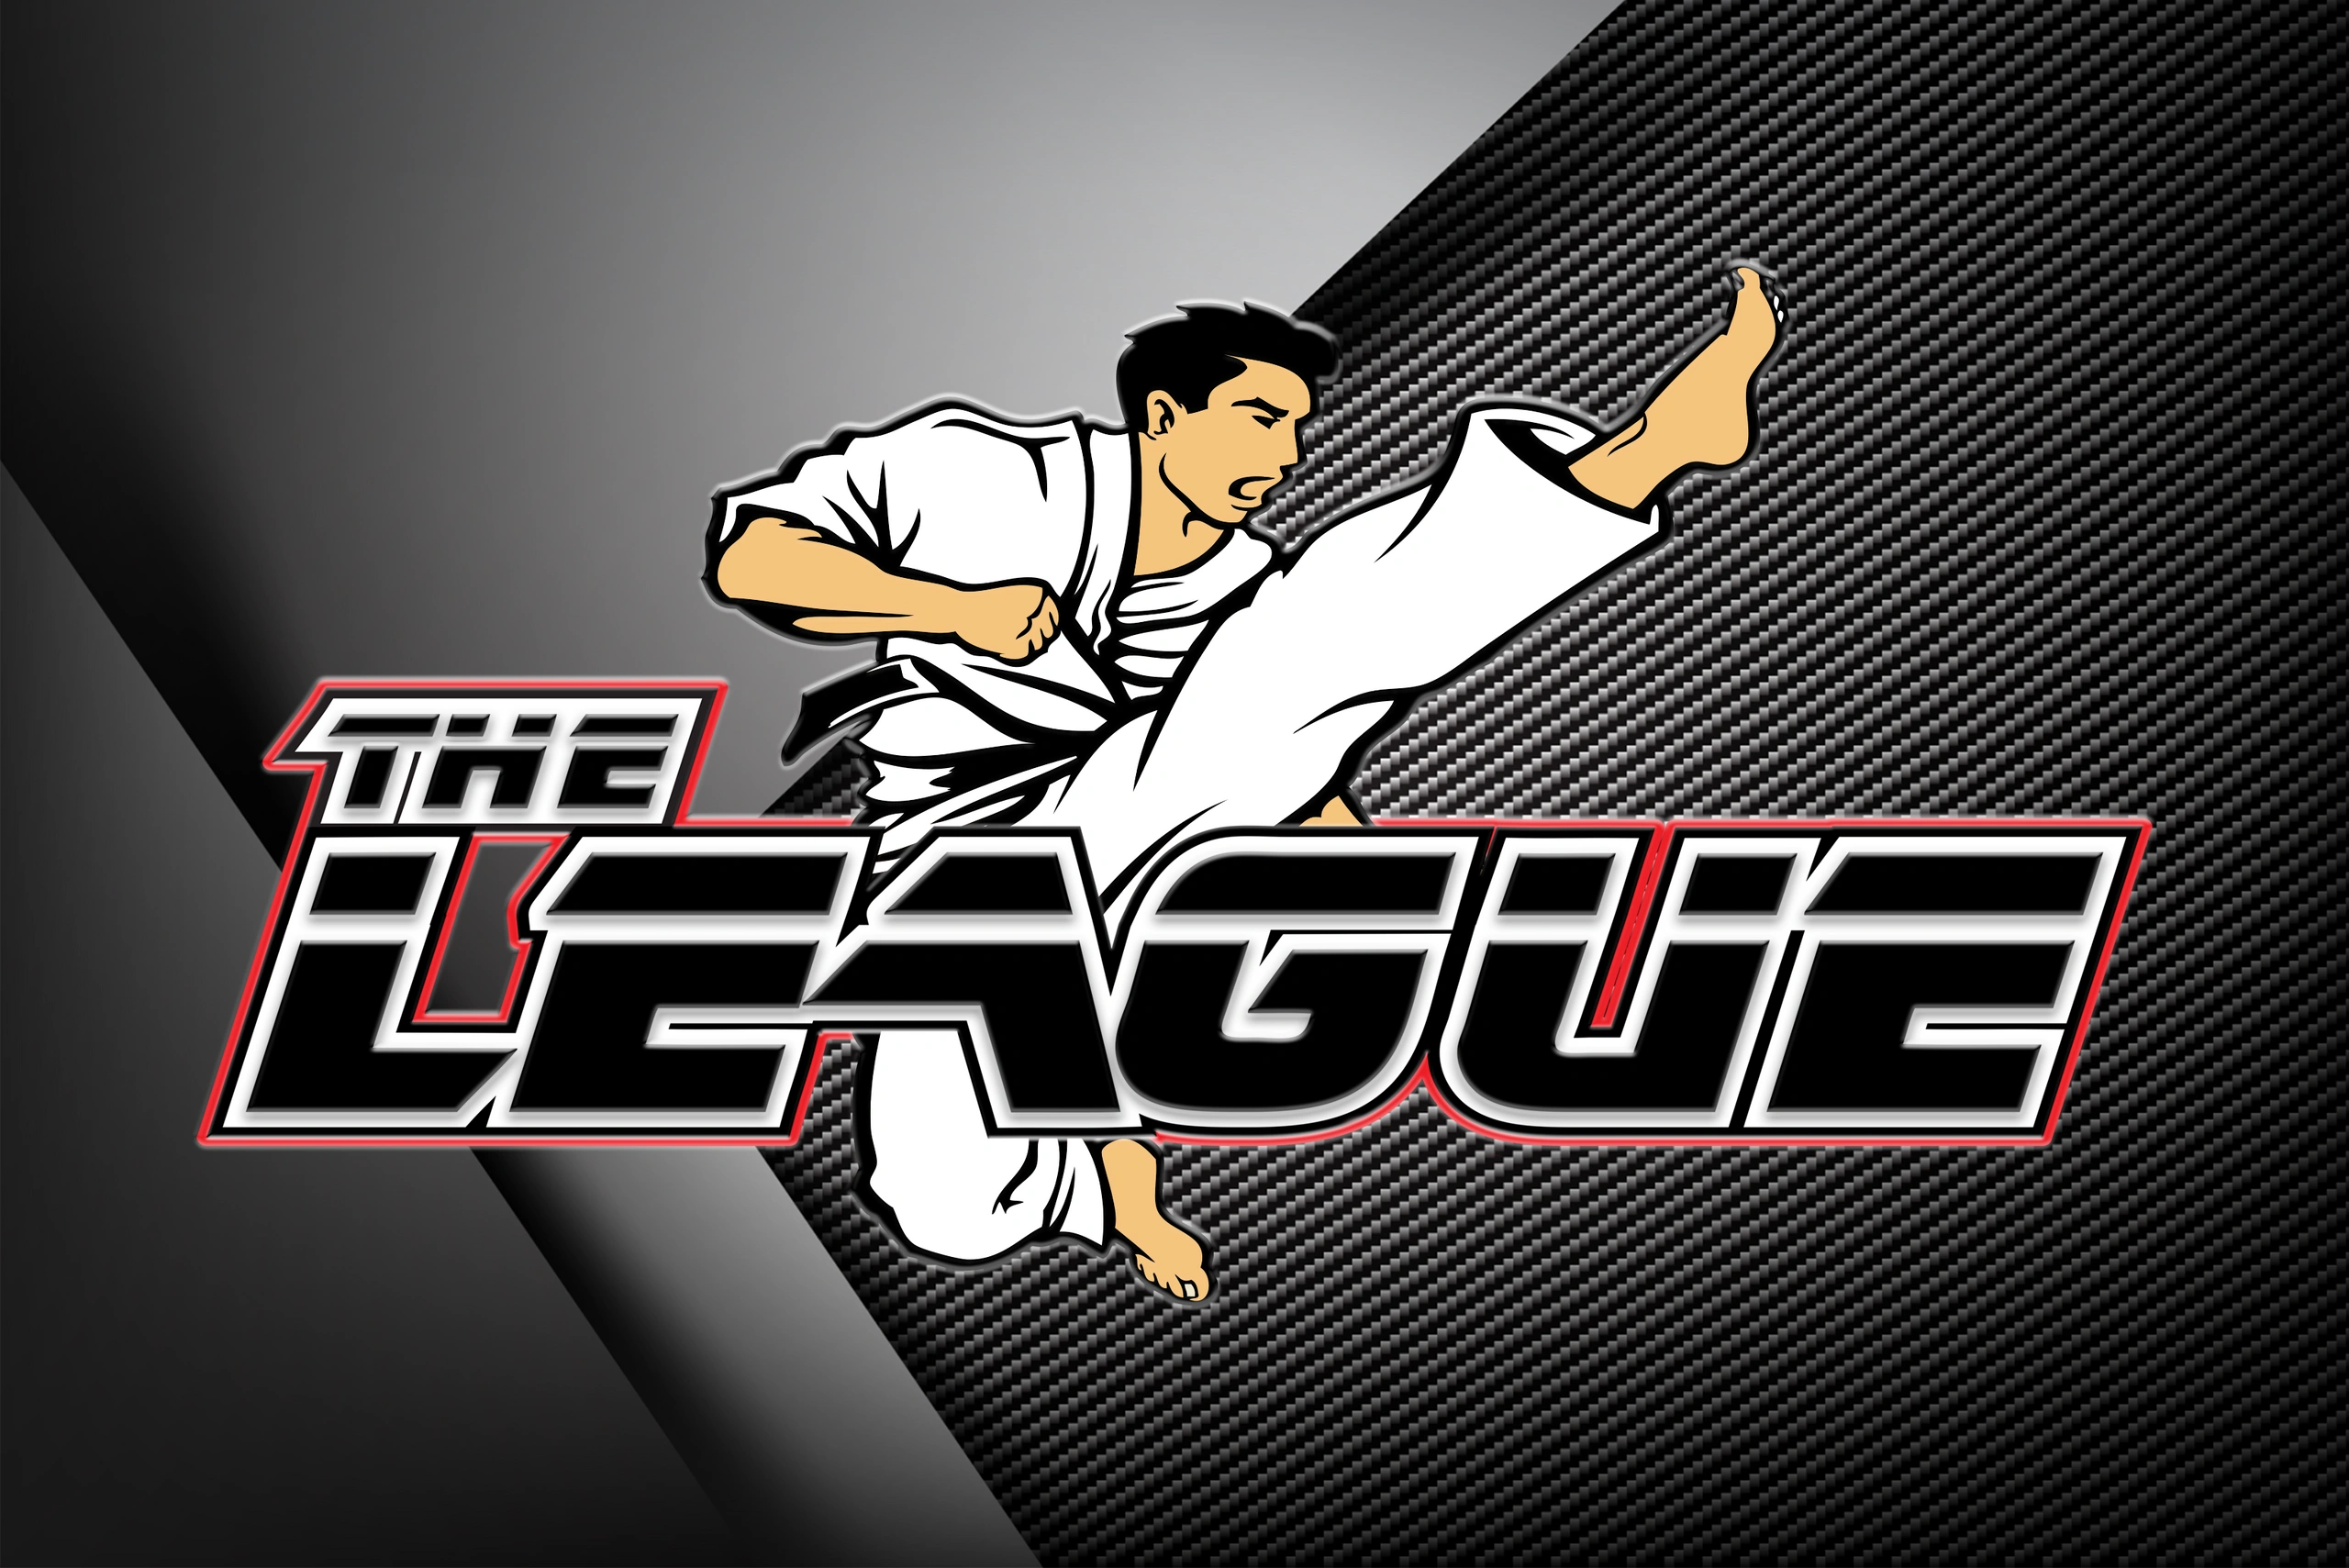 The League MA